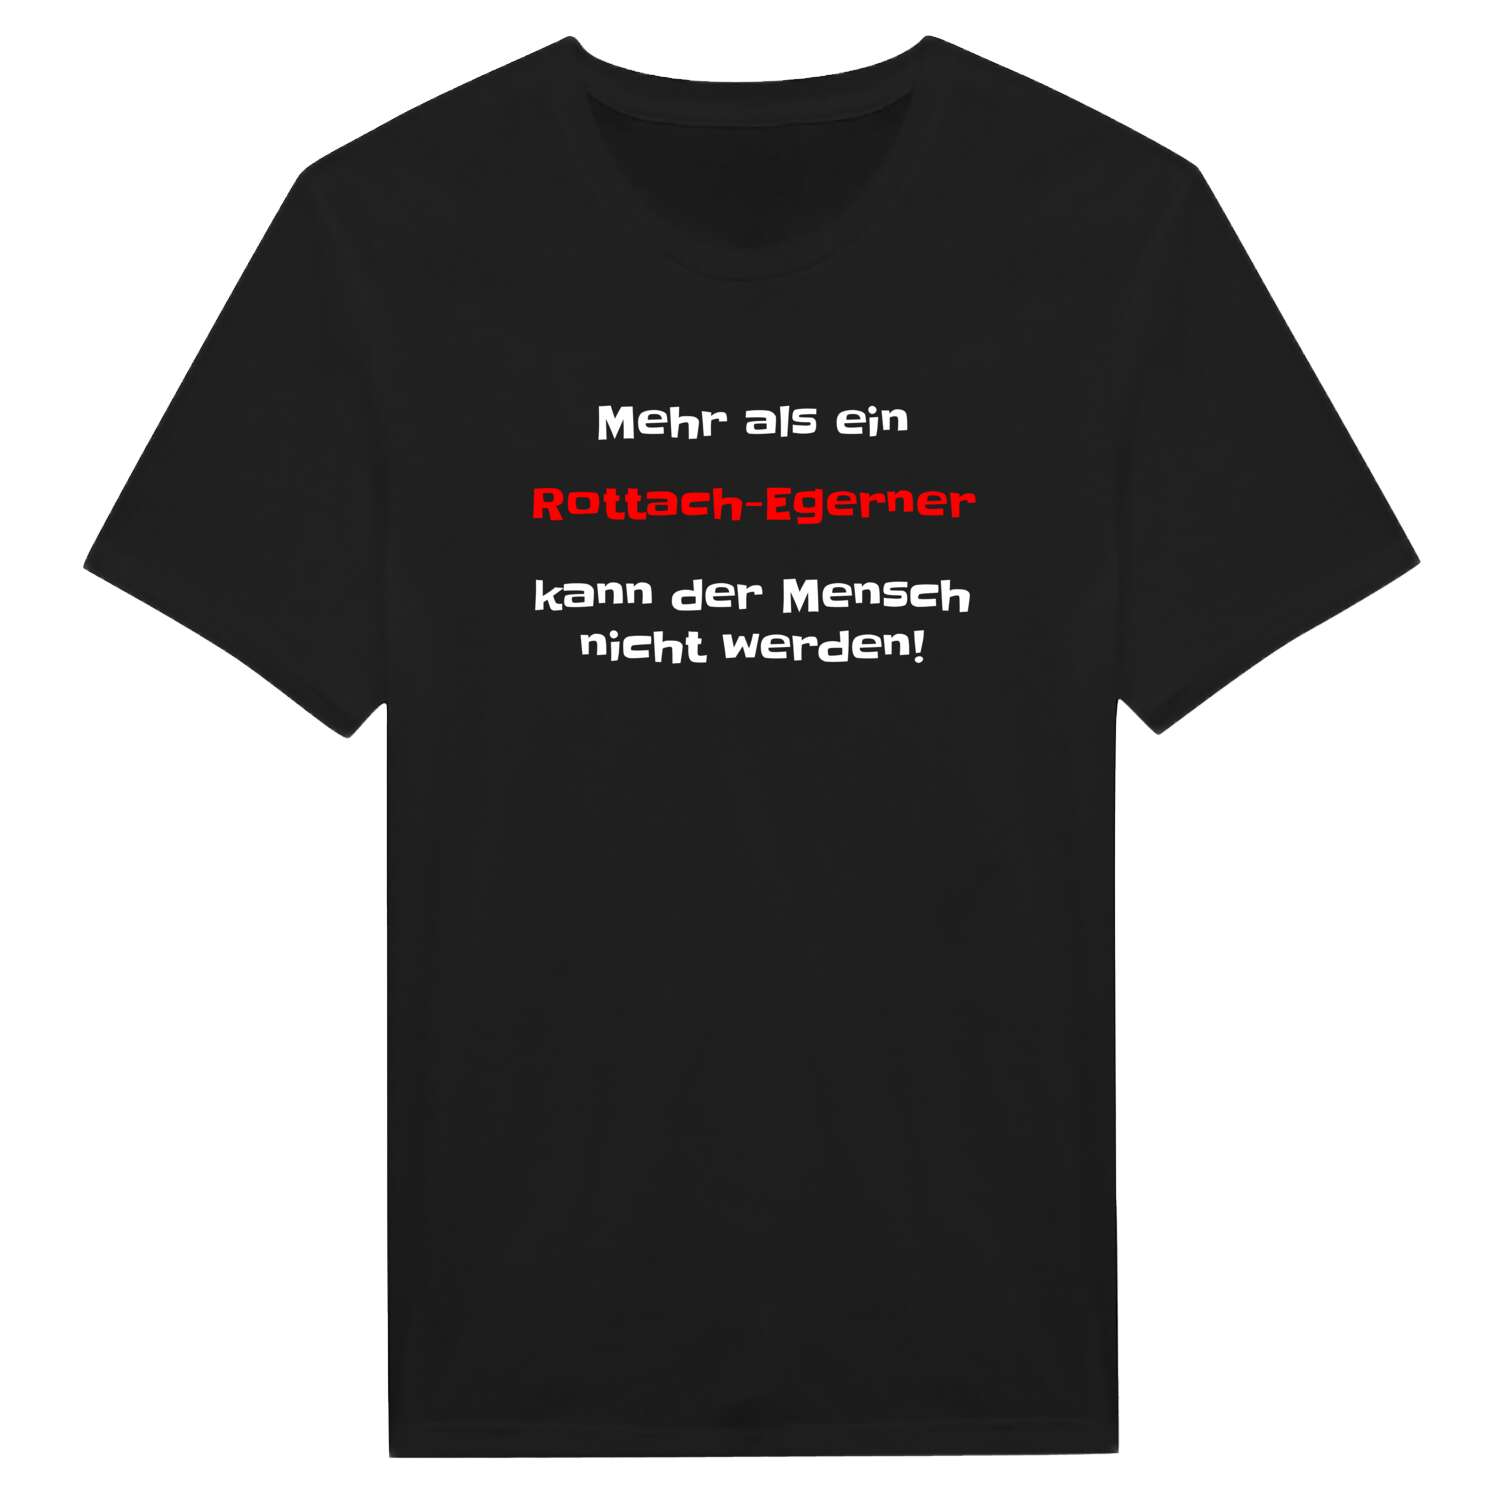 Rottach-Egern T-Shirt »Mehr als ein«